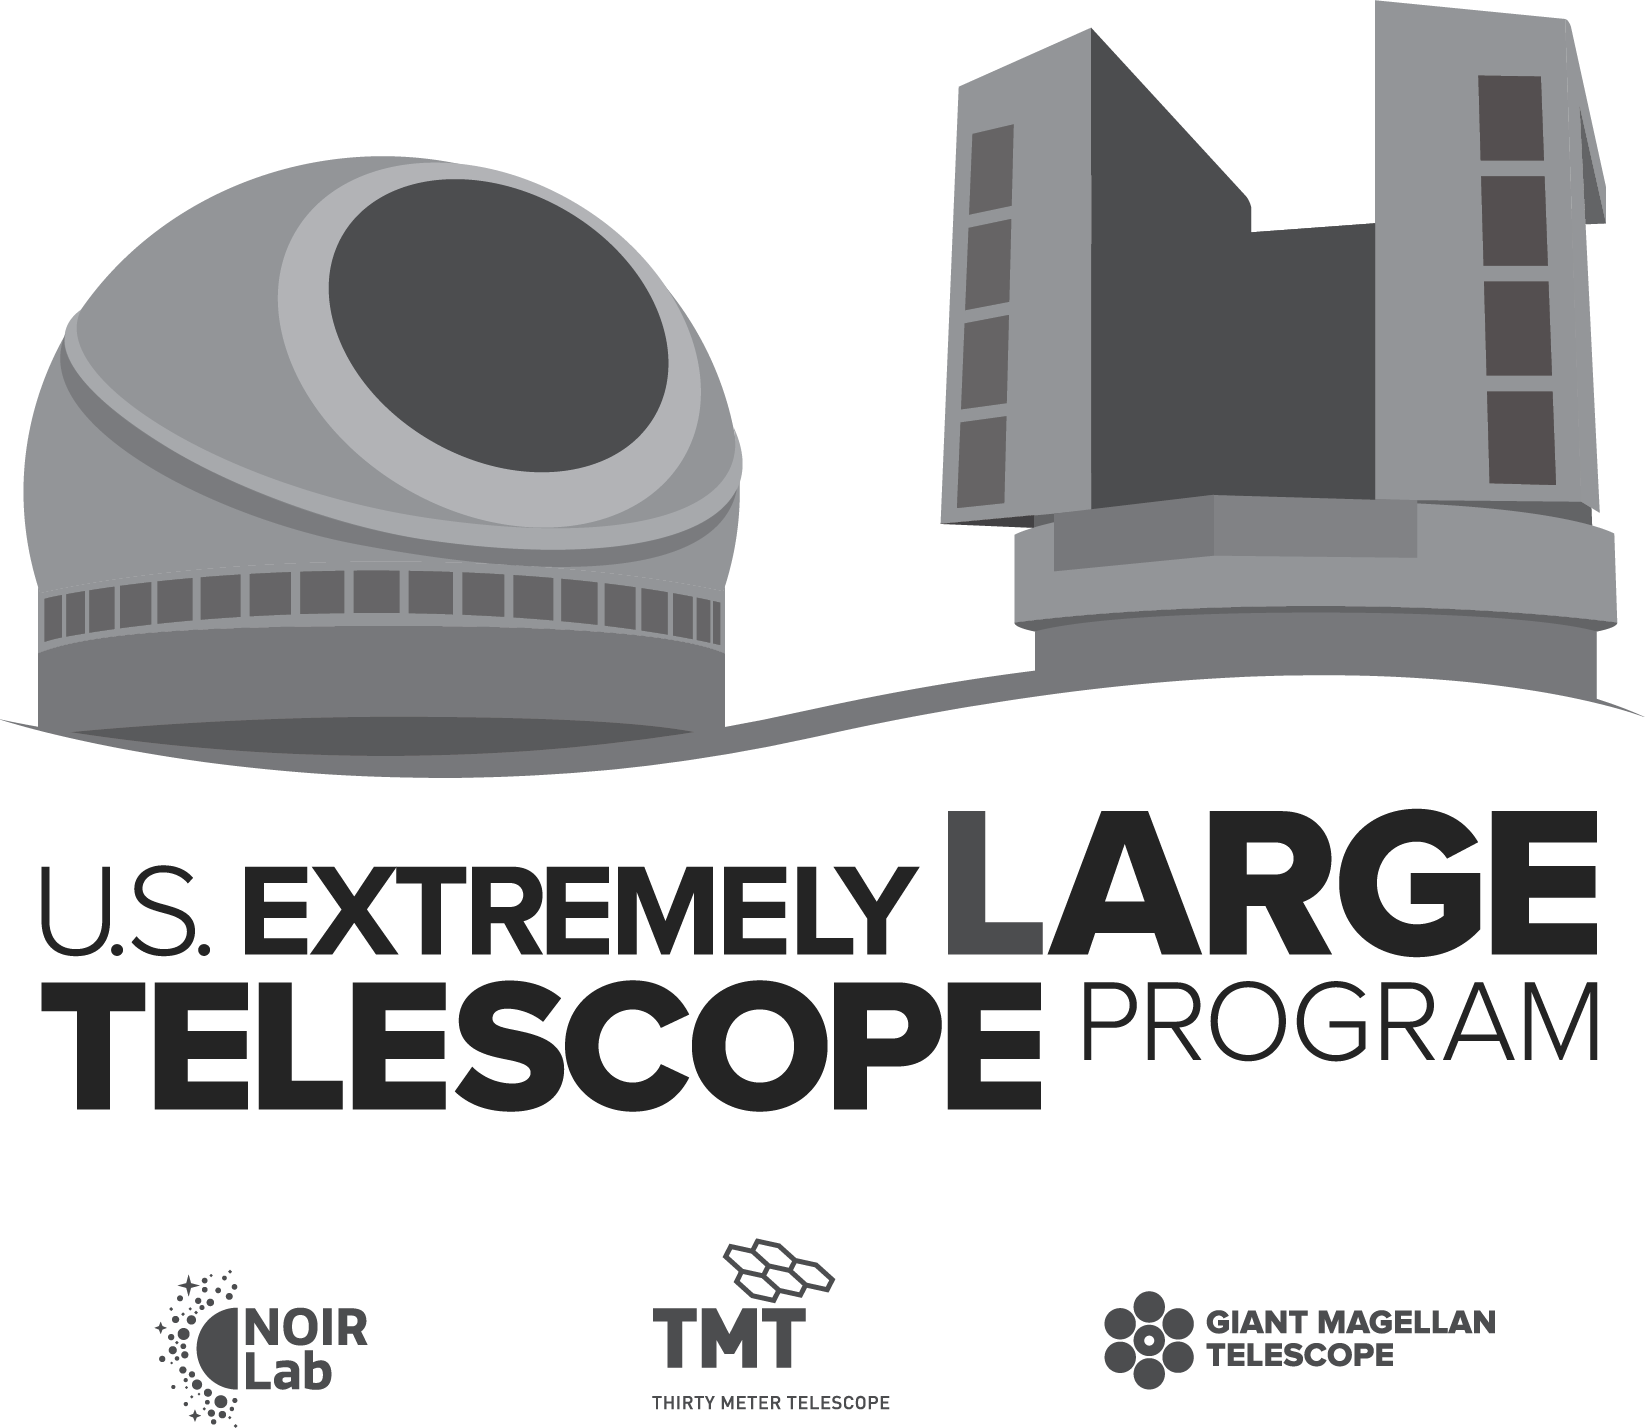 The US Extremely Large Telescope Program